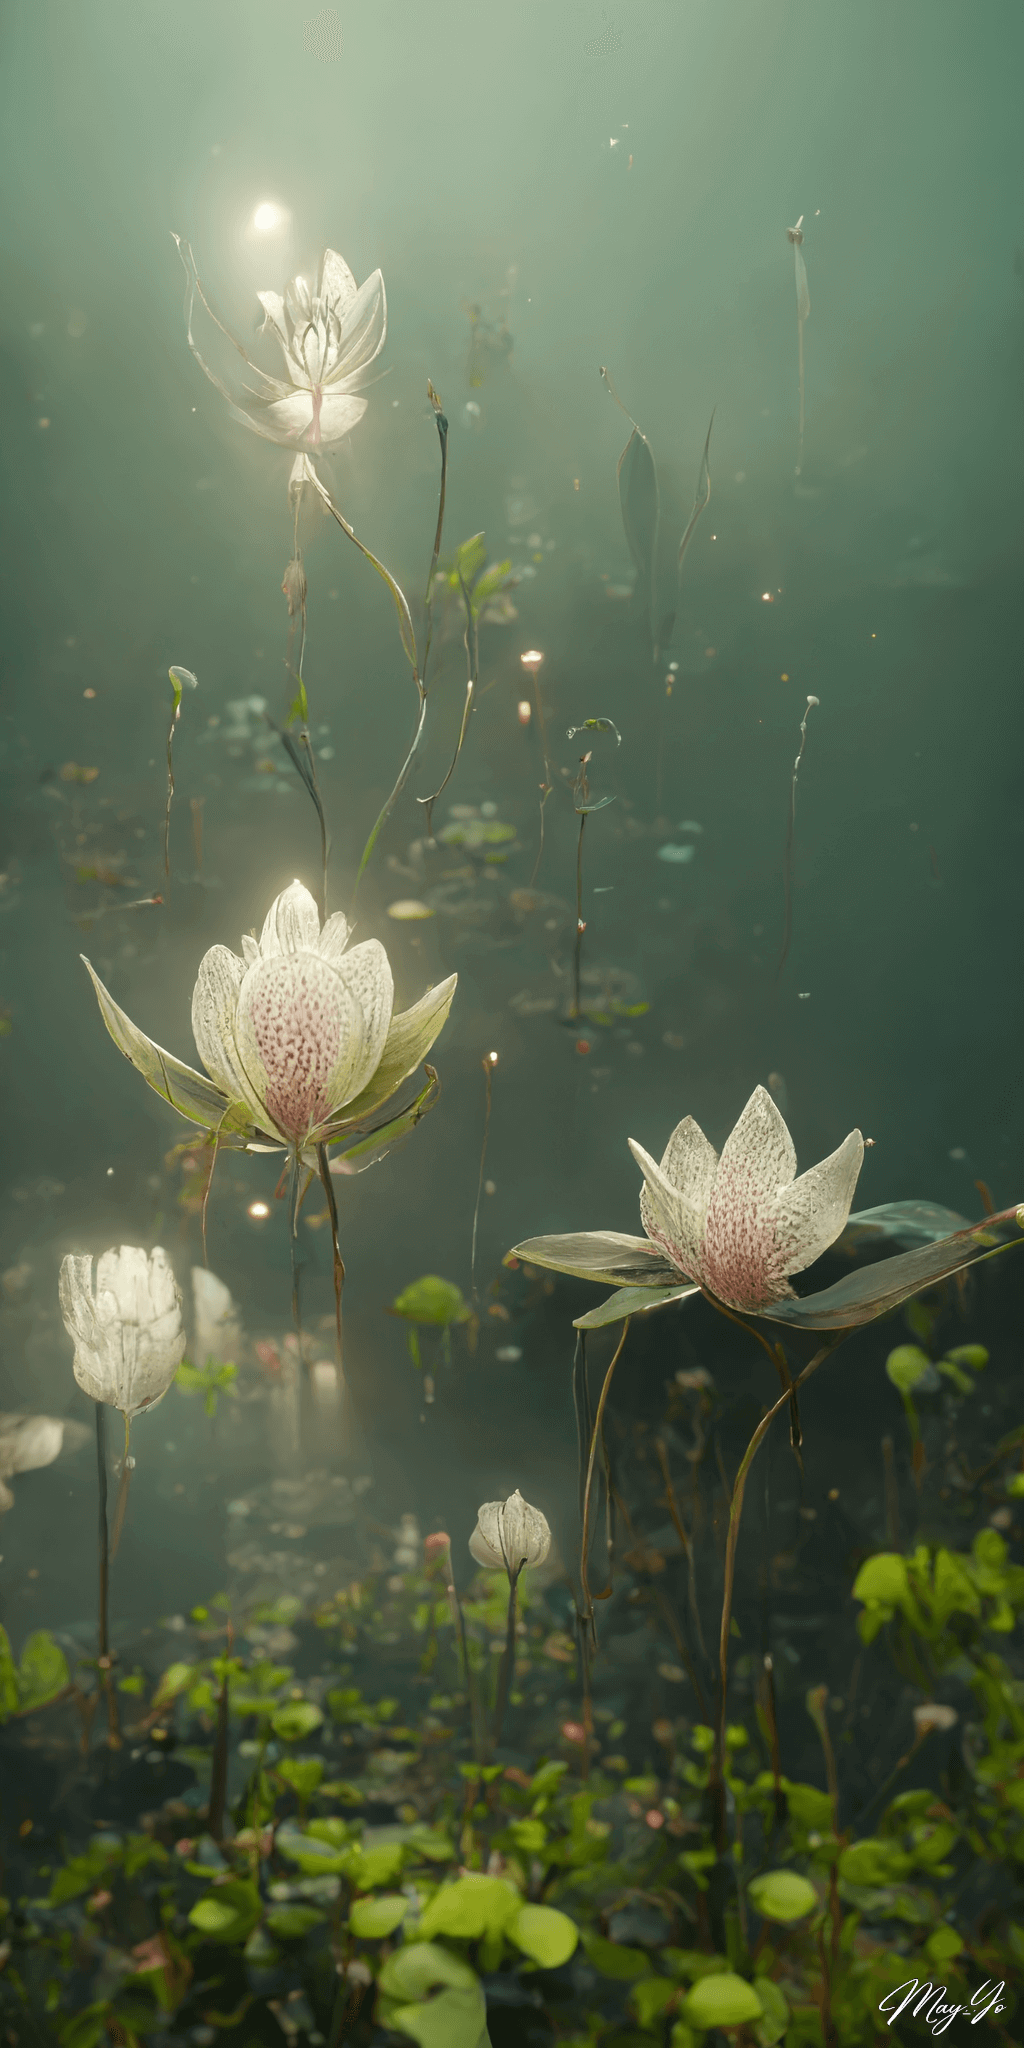 百合と蓮が咲く幻想的な池のイラスト 湖畔の壁紙 AIイラスト待受 縦長画像 lotus lily flower illustration garden